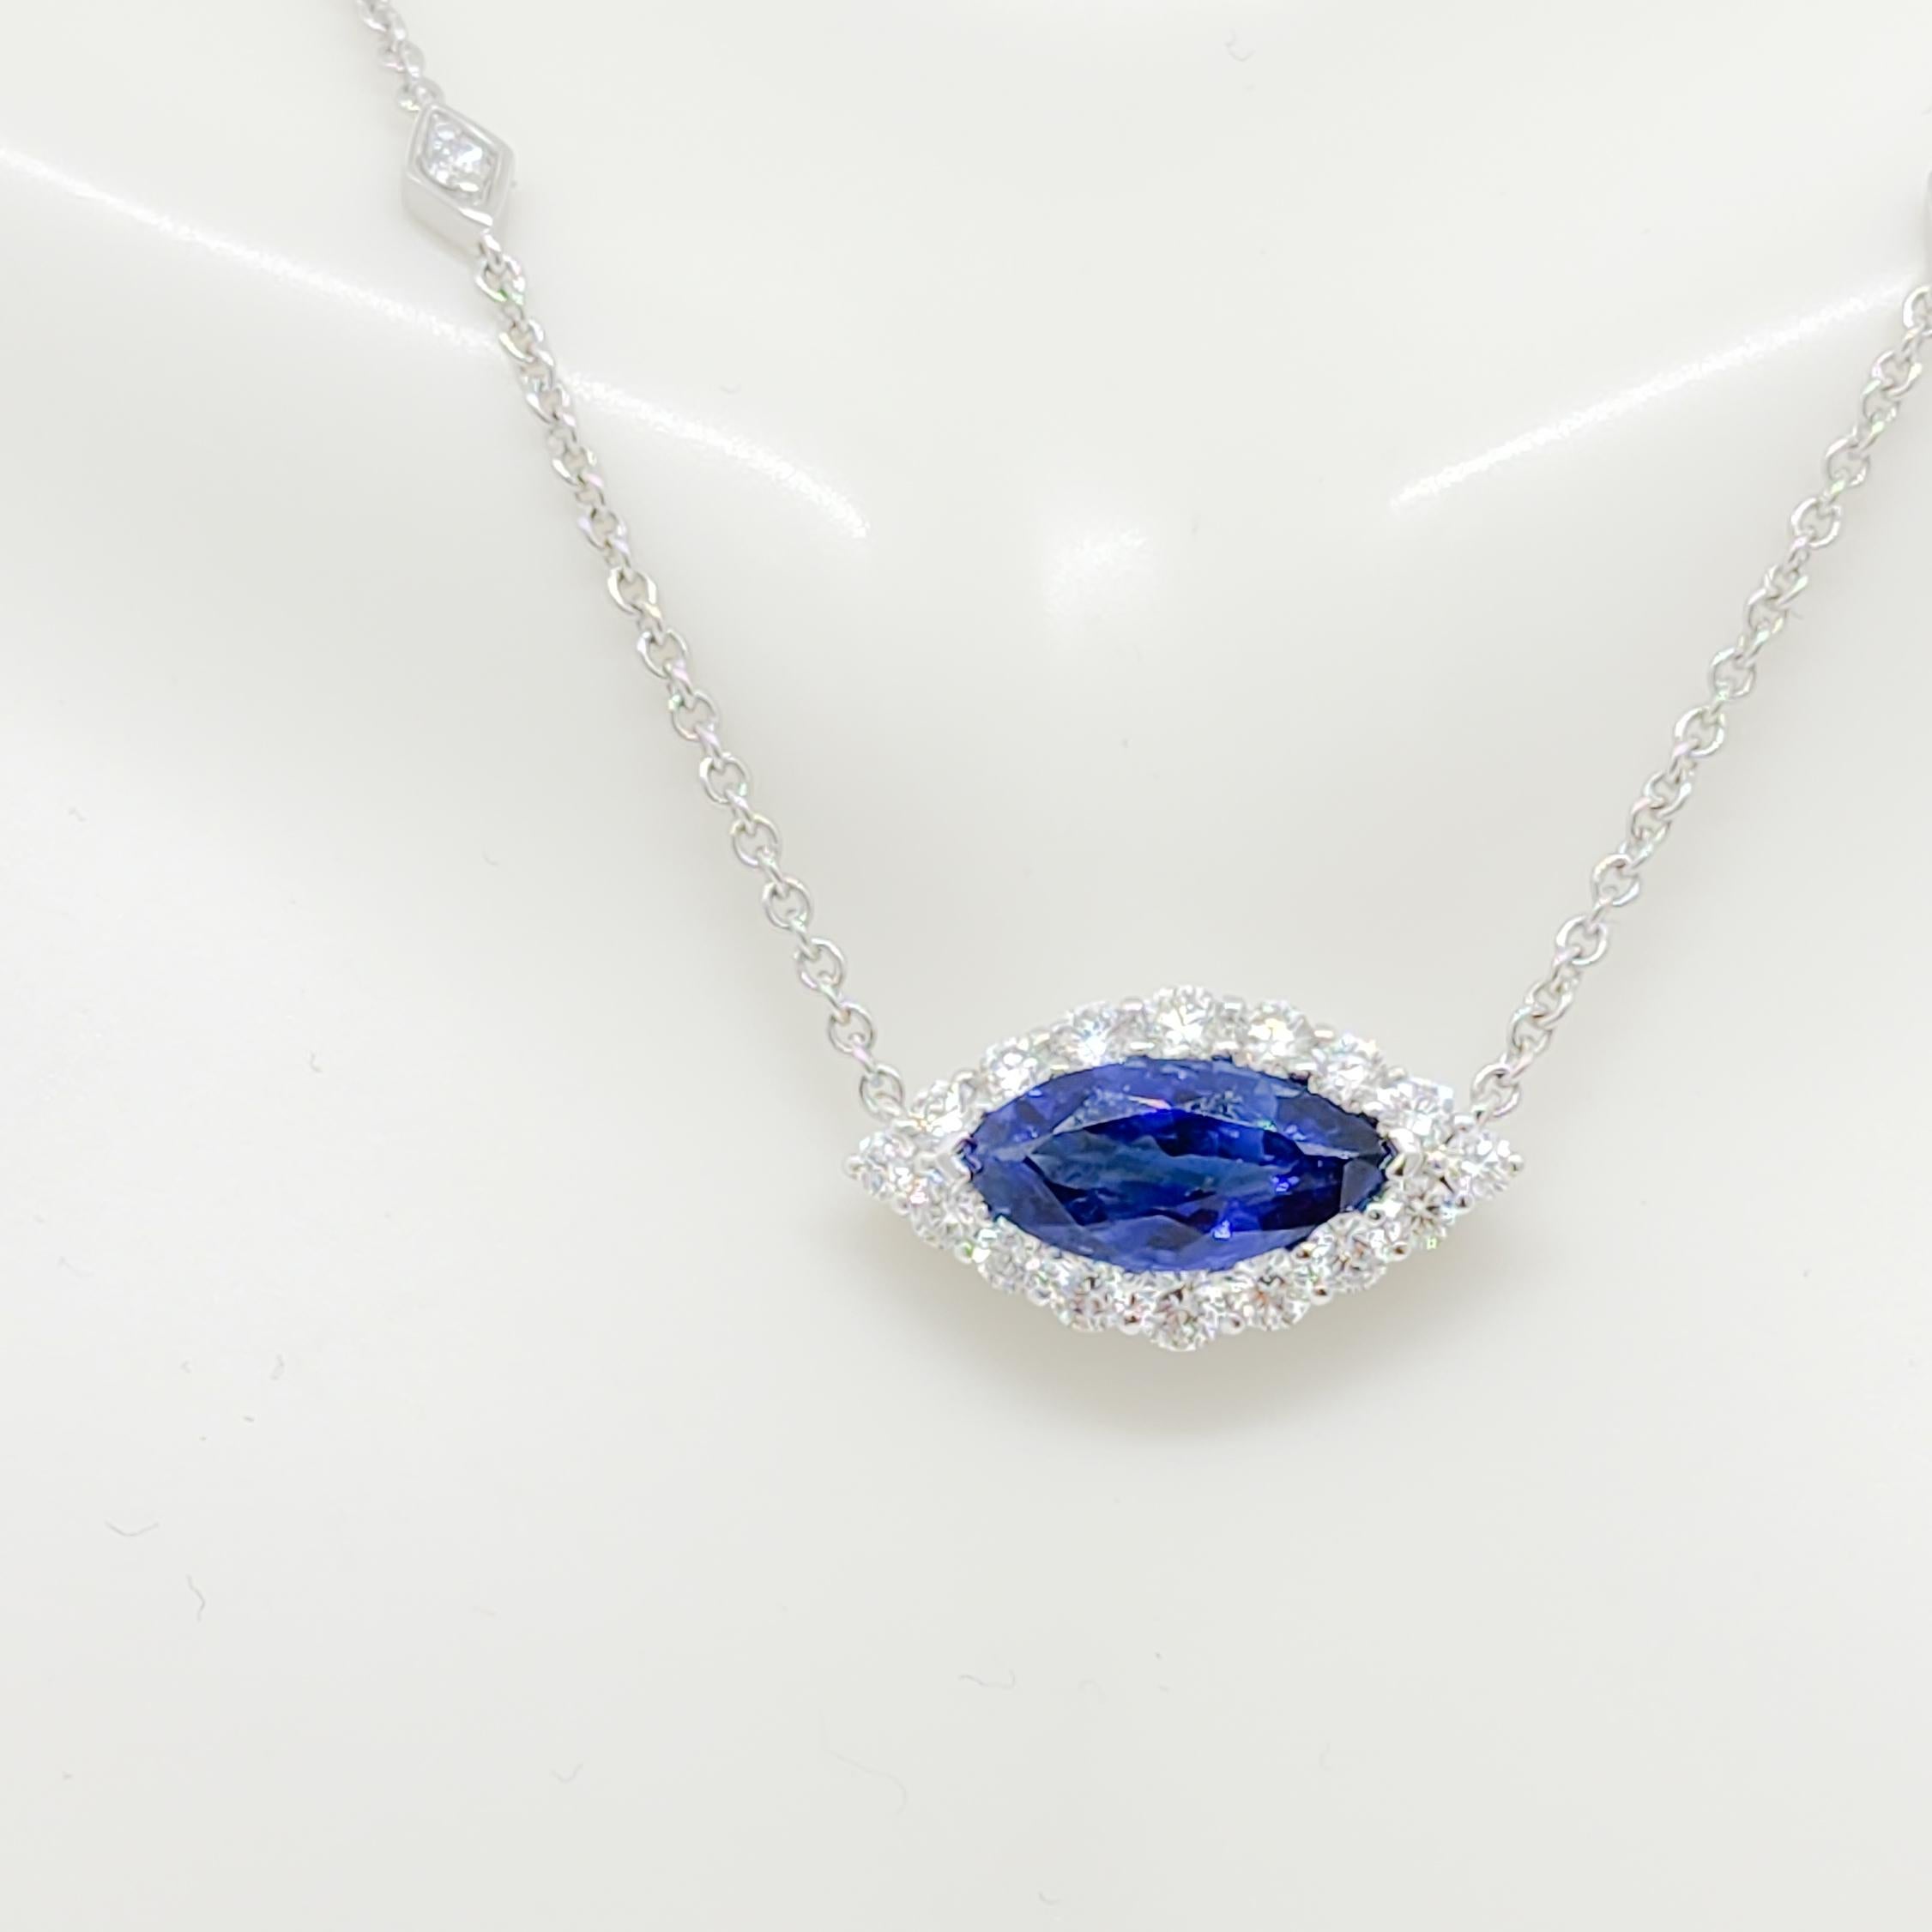 Wunderschöner 2,62 ct. blauer Saphir Marquise mit 0,87 ct. weißen Diamanten guter Qualität in runder und marquiser Form.  Handgefertigt aus 18k Weißgold.  Diese Halskette ist eine lustige Variante des 